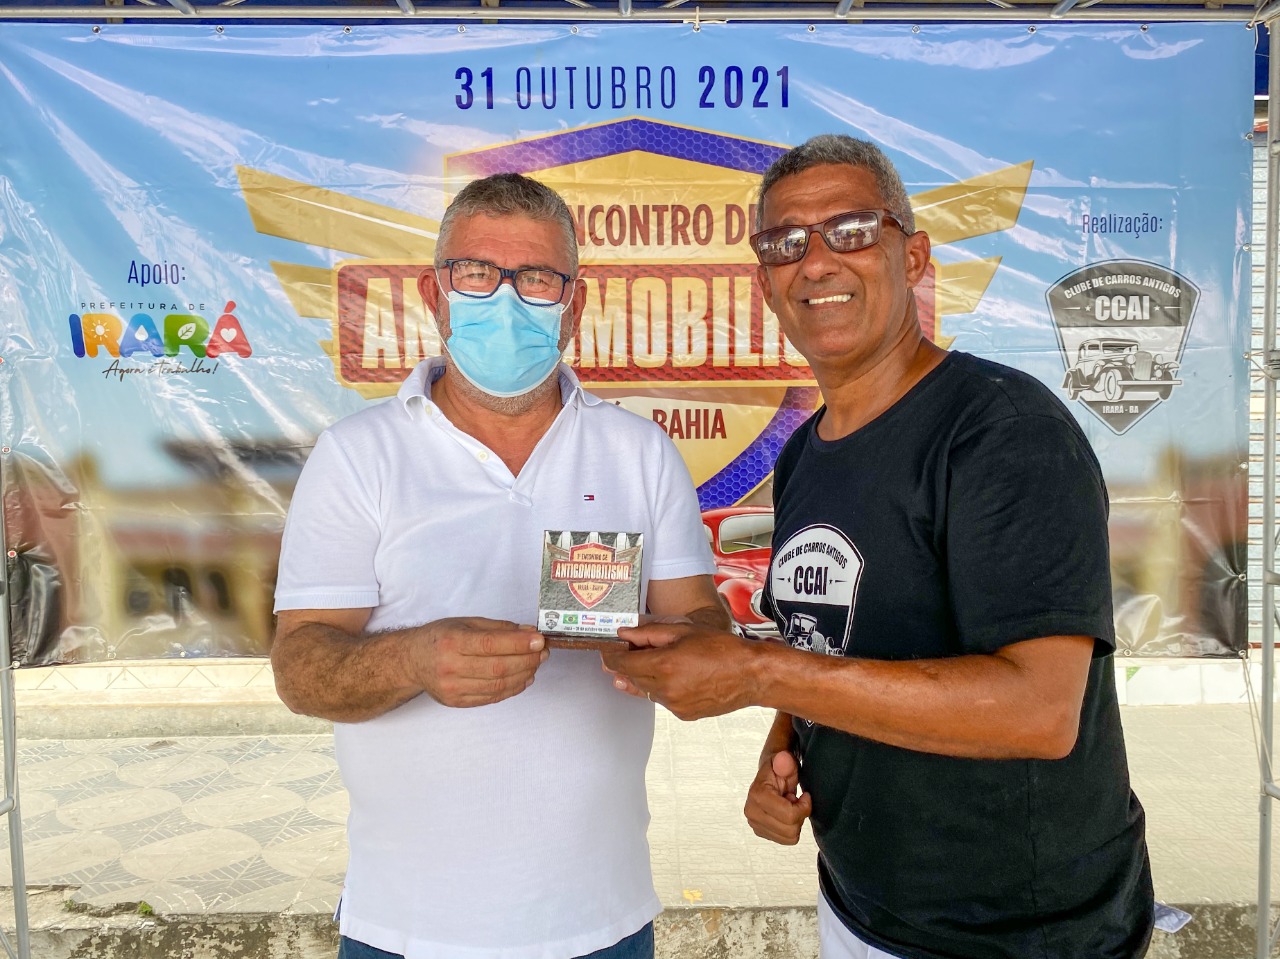 08 de agosto, com Ivan Mesquita, supera 30 mil visualizações - Prefeitura  de Irará